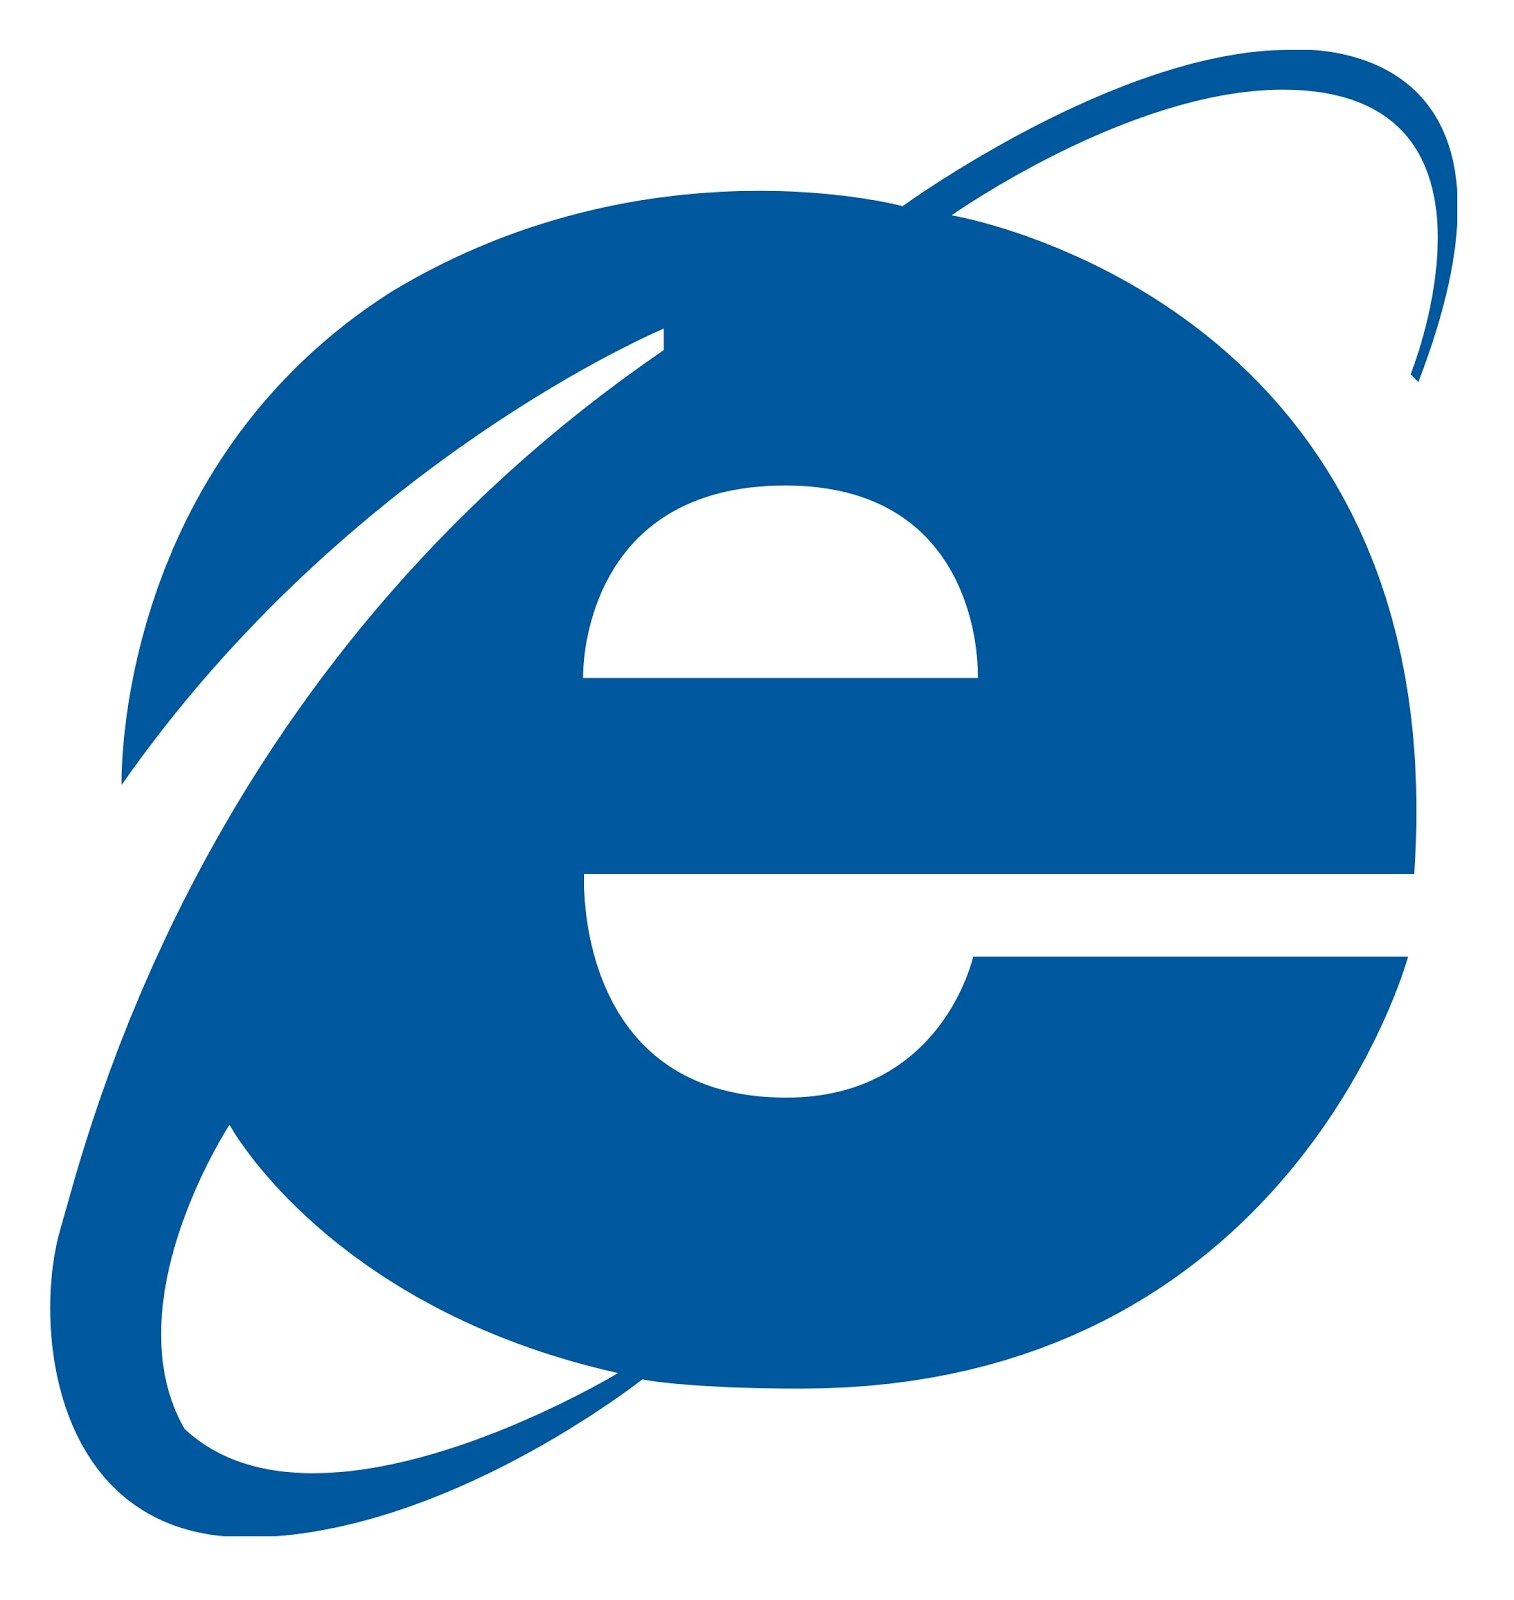 internet-explorer-logo-wallpaper.jpg